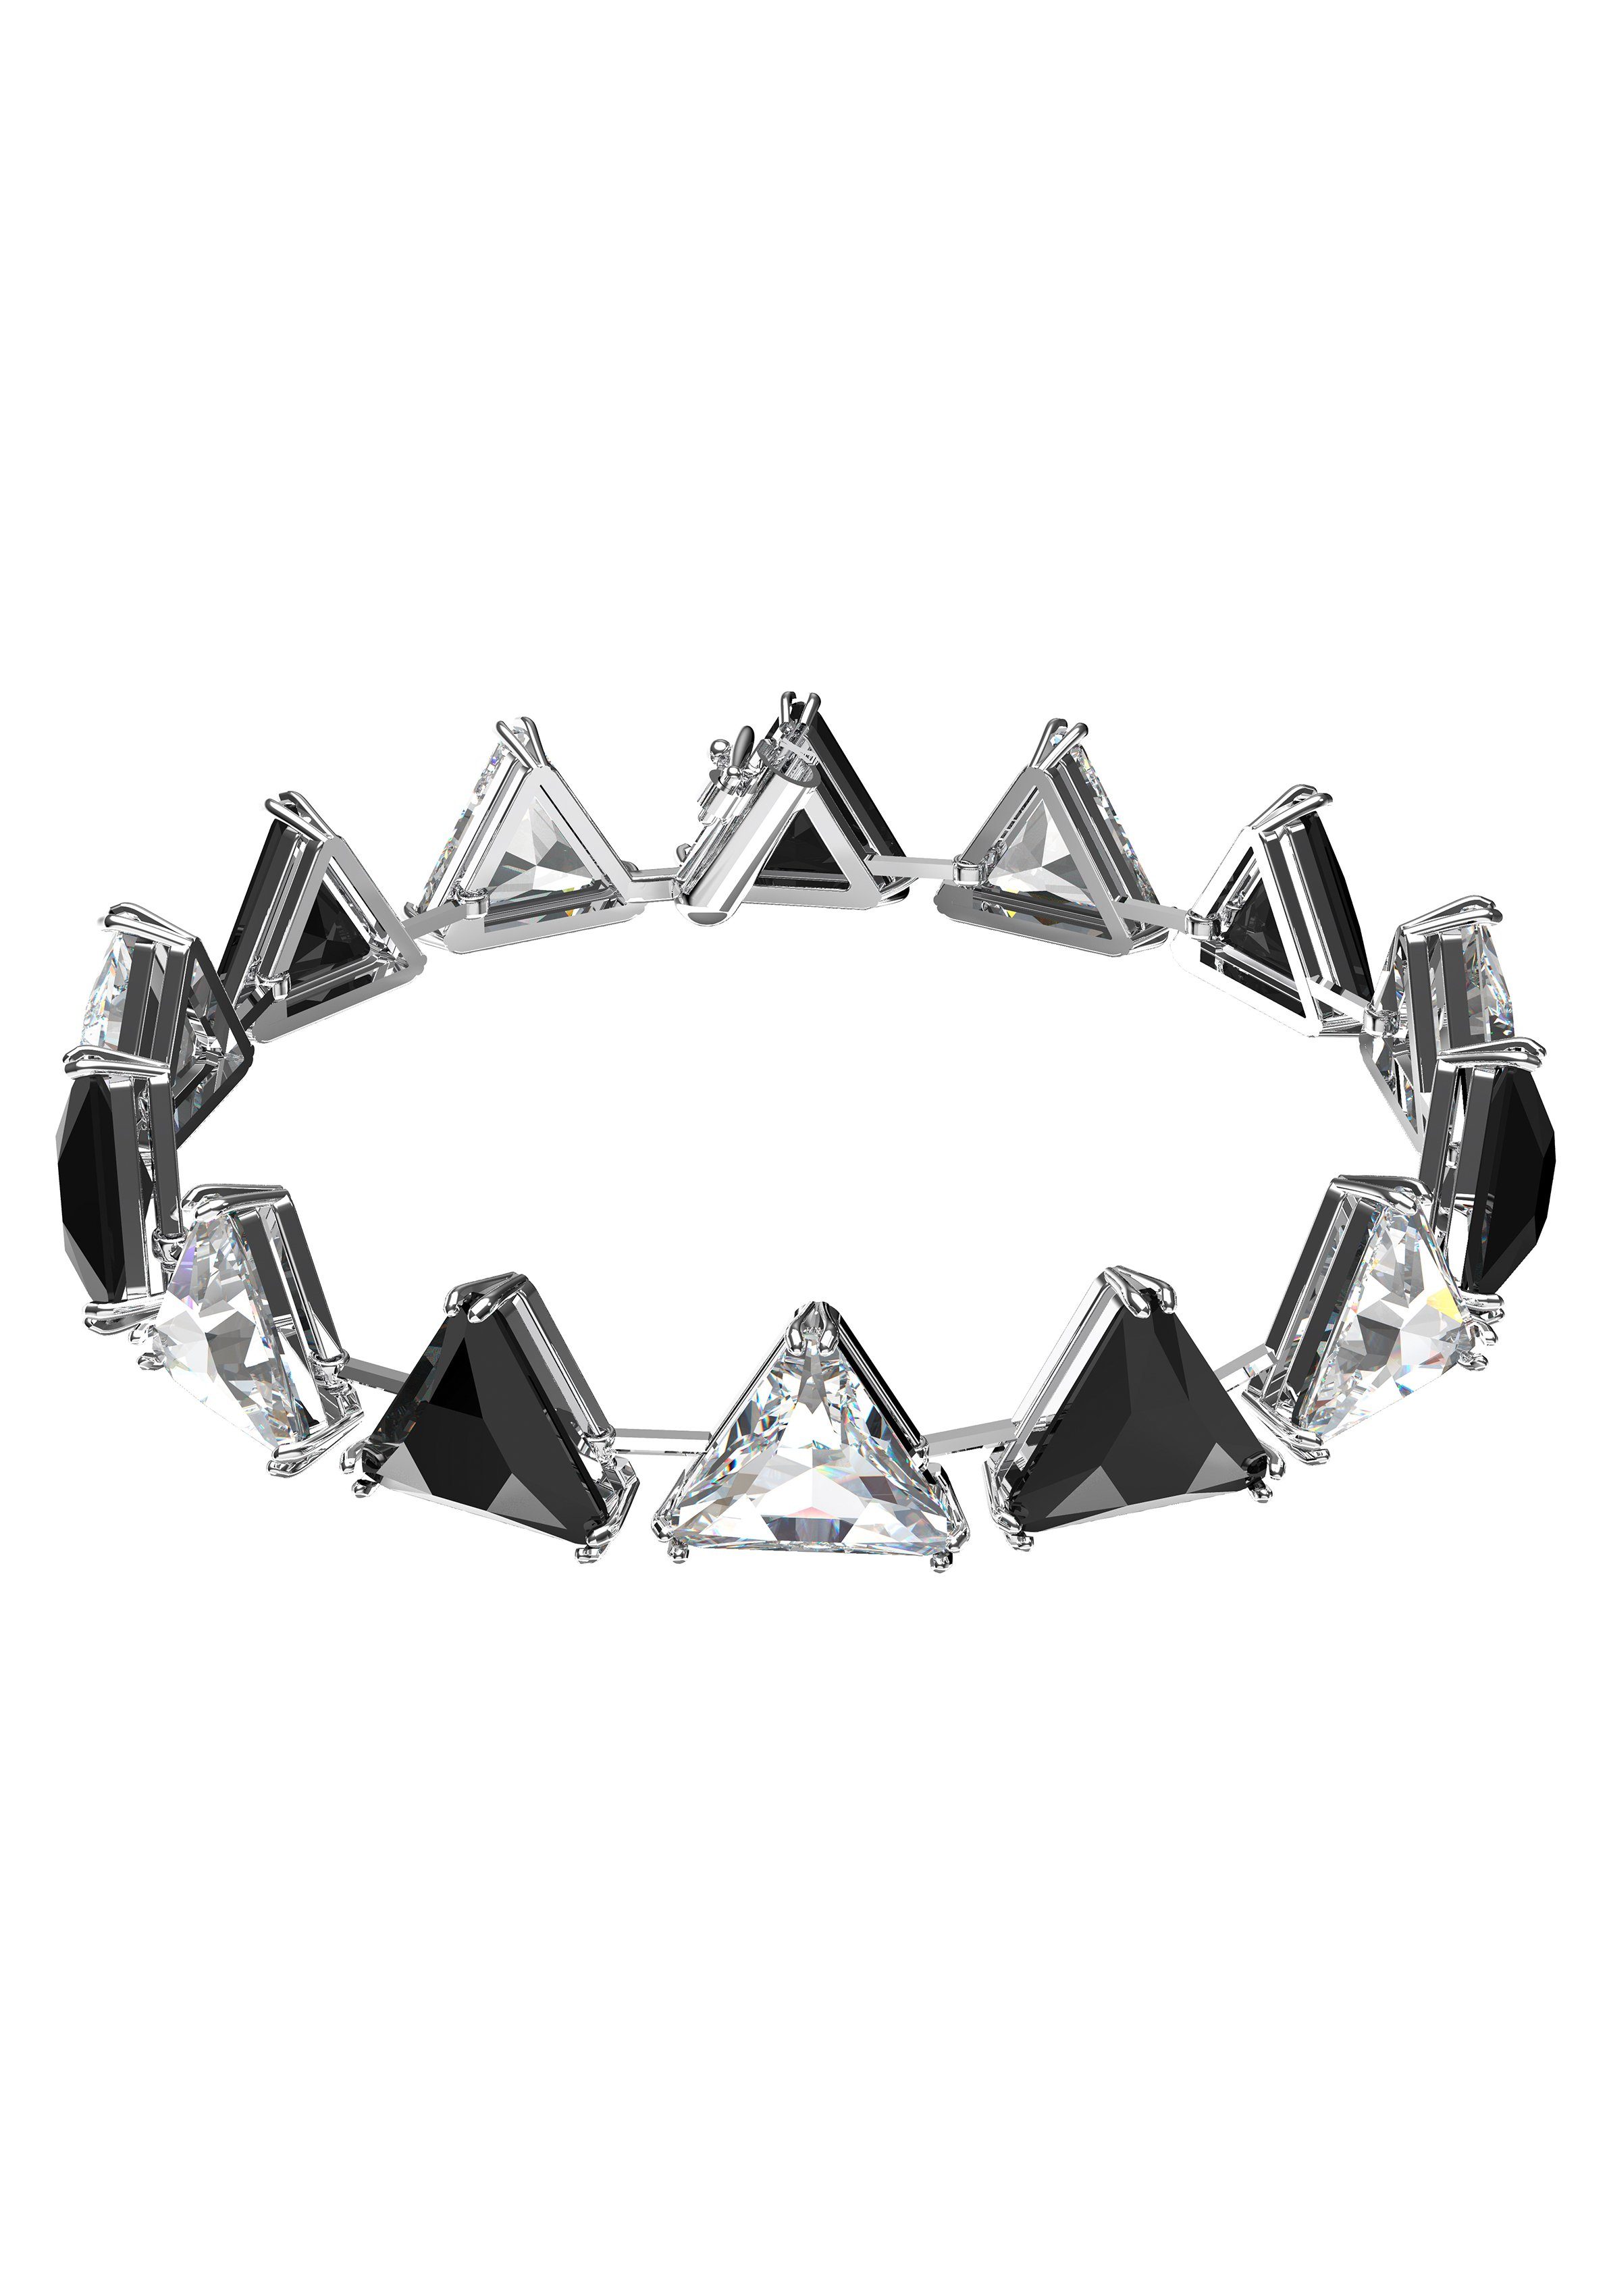 Swarovski Armband Ortyx, Kristalle im Dreiecksschliff, 5600864, 5614934, 5619154, mit Swarovski® Kristall metallfarben-schwarz-kristallweiß | Armbänder